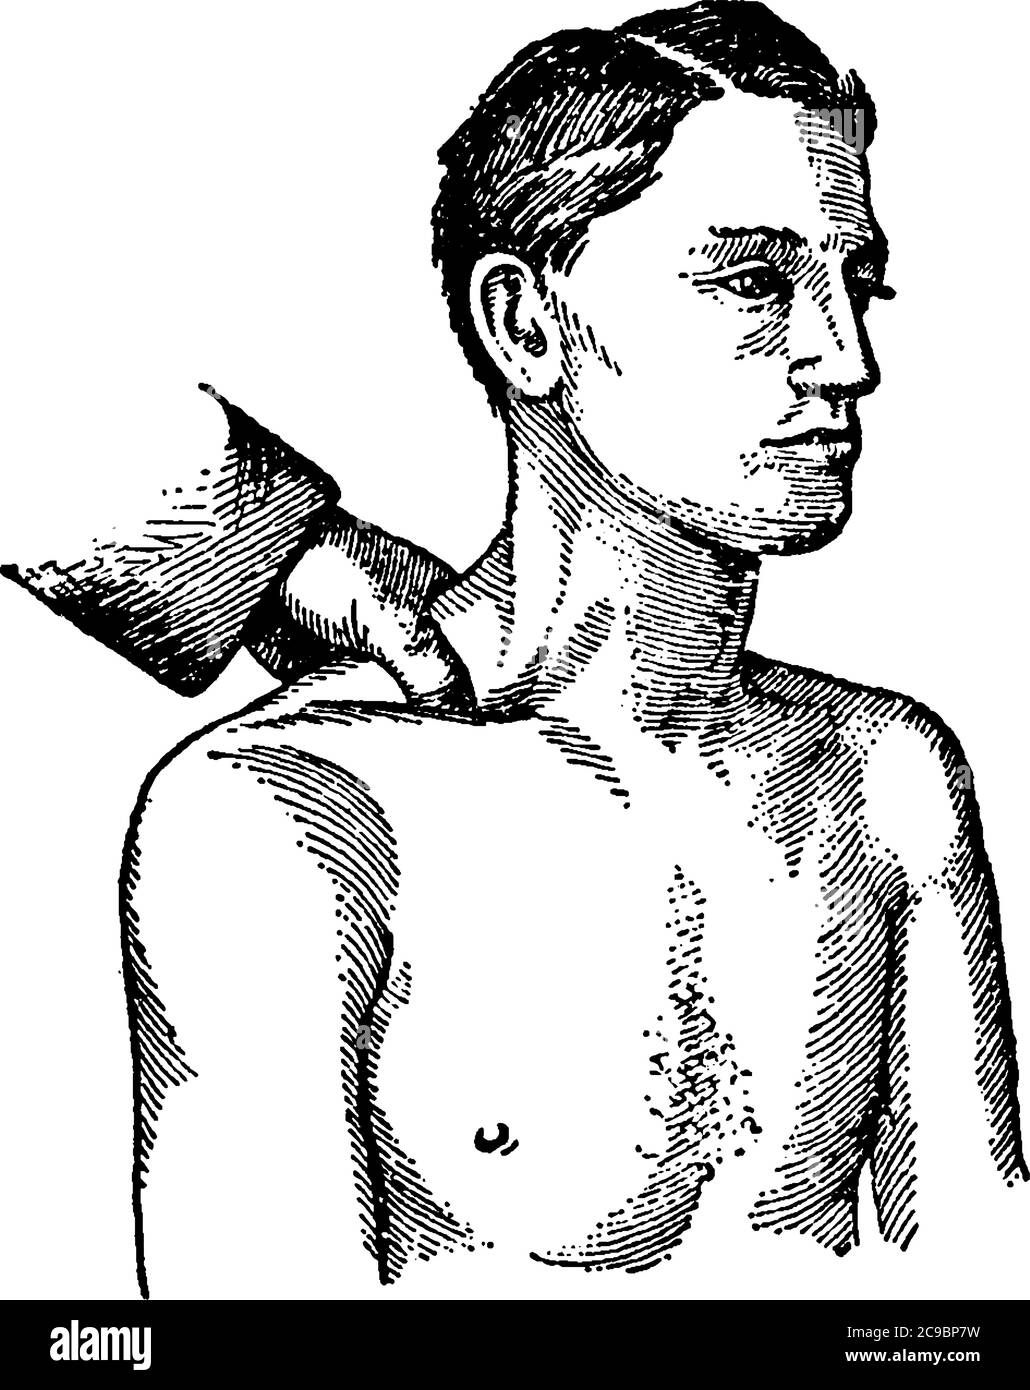 Stellt subclavia Kompression, bei Blutungen aus Wunden der Schulter oder Achsel die subclavia Arterie erreicht werden kann, indem Sie den Daumen tief Stock Vektor